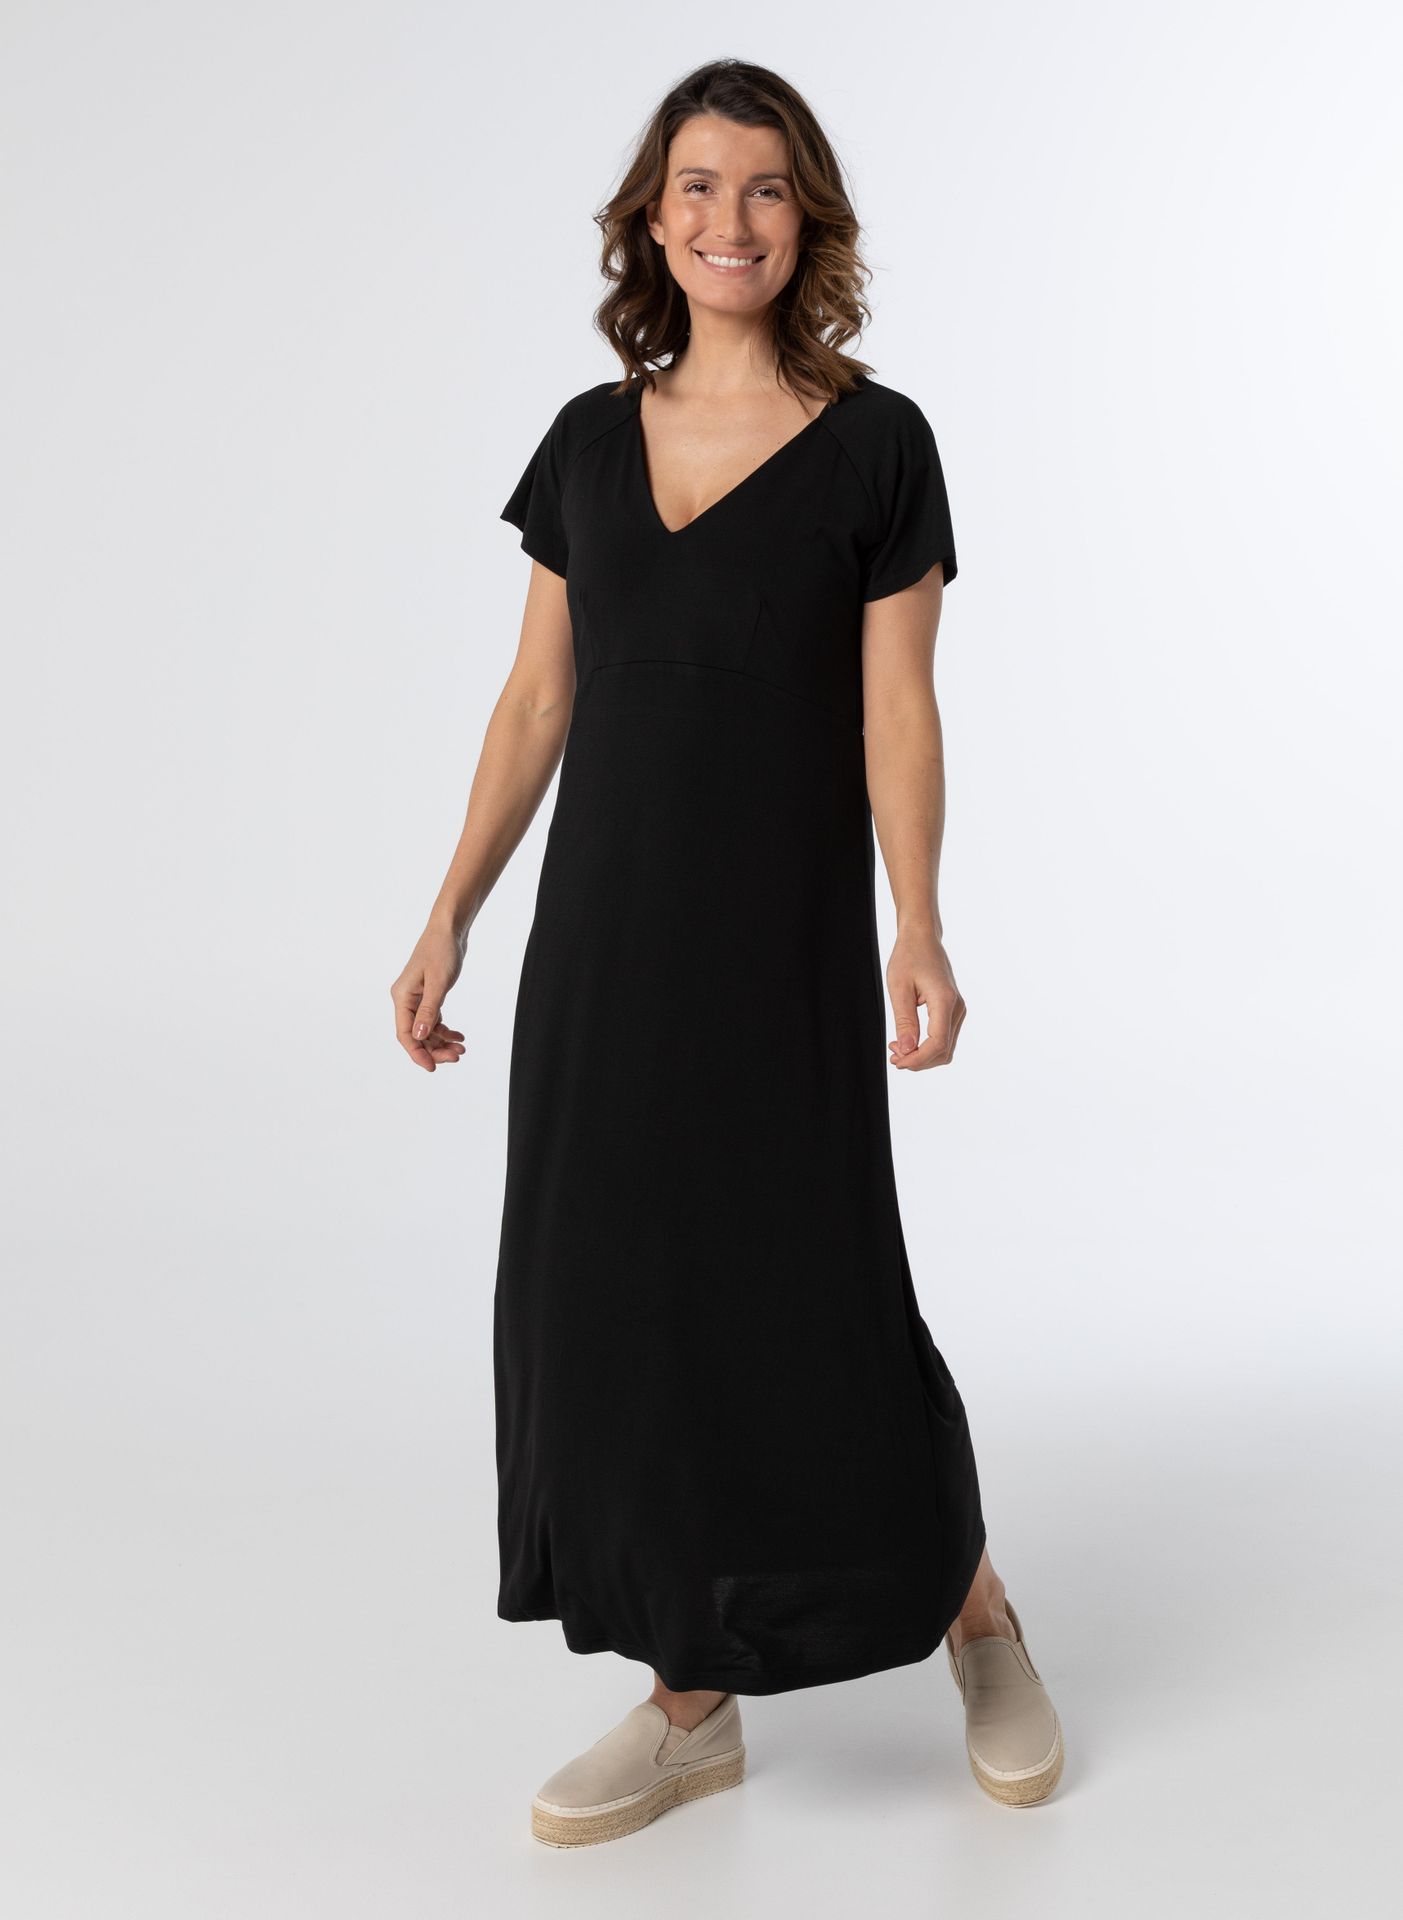 Norah Lange jurk zwart black 210952-001